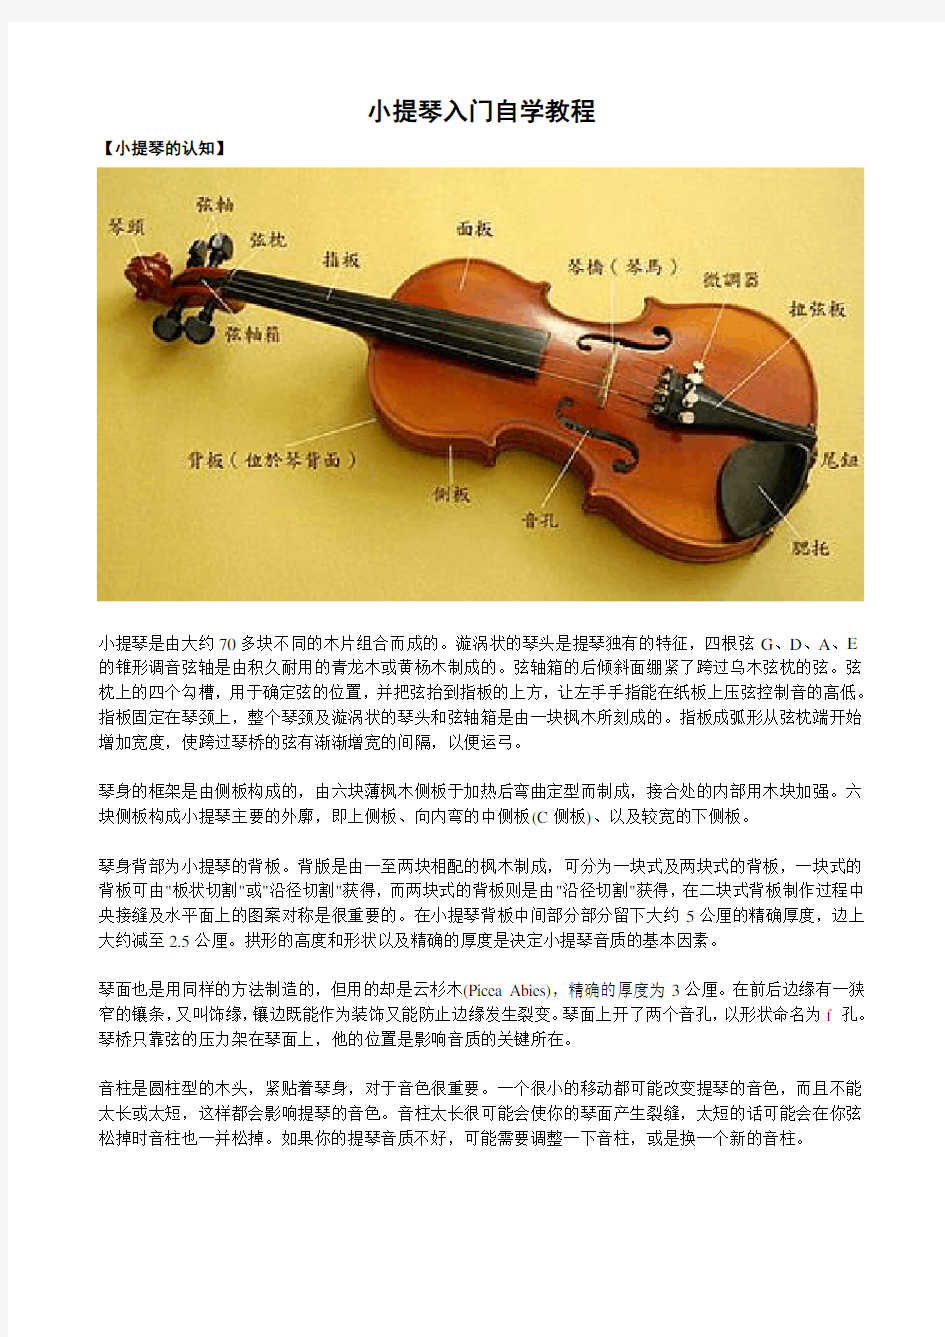 小提琴入门自学教程